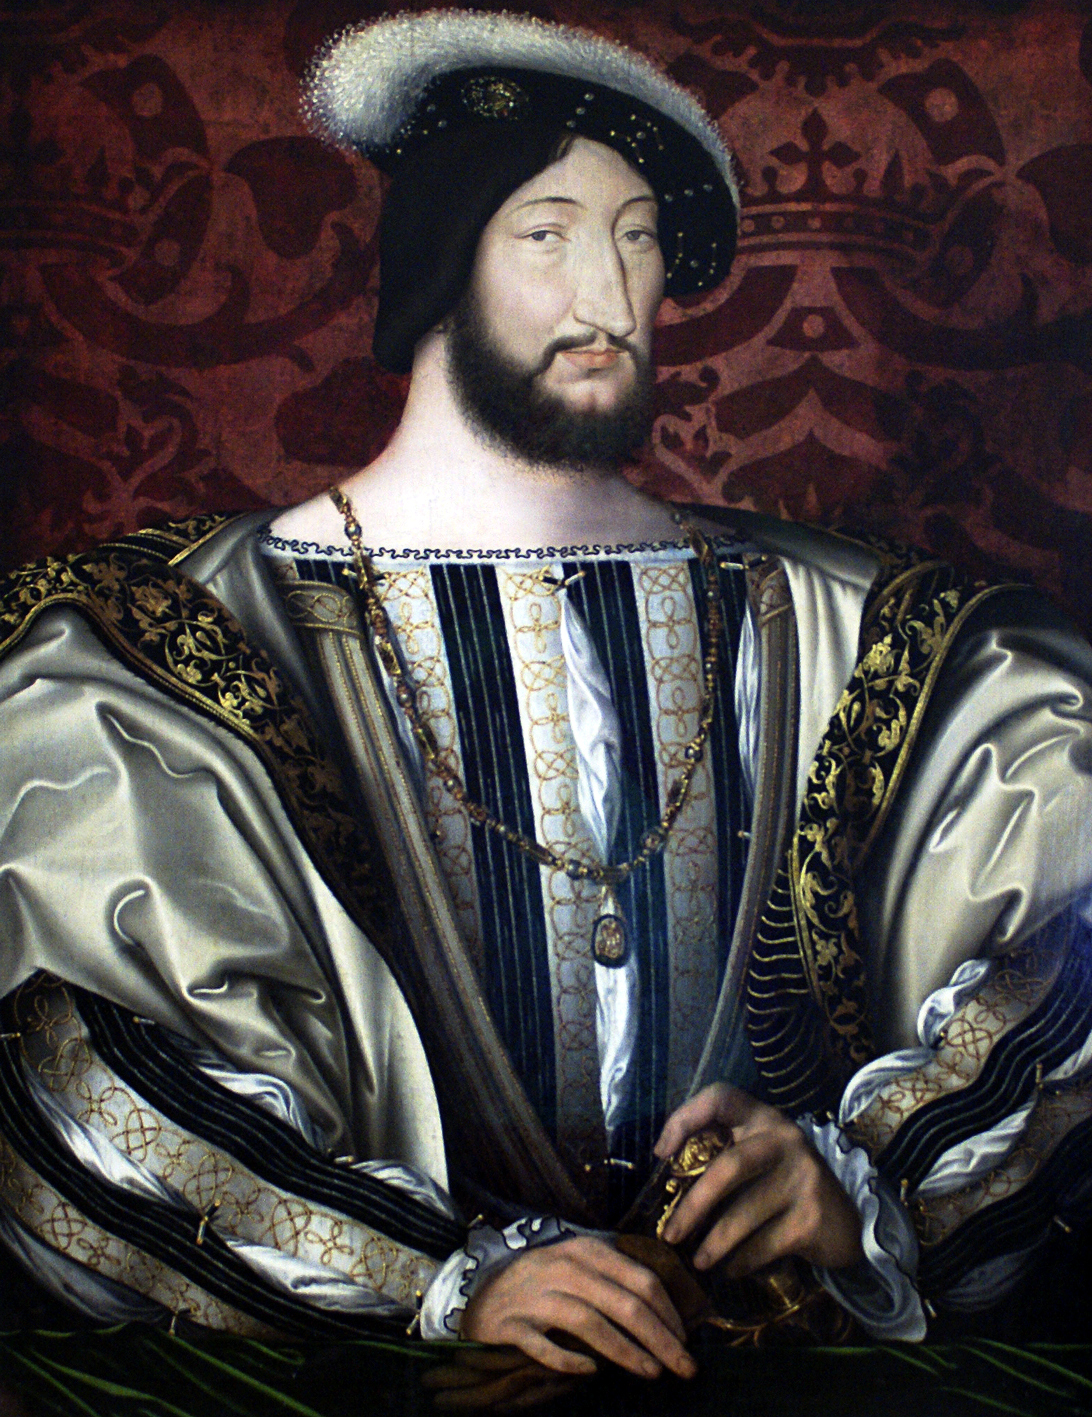 Portrait de François Ier. Sous son règne, il a favorisé le développement des arts et les lettres. © Jean Clouet, Wikimedia Commons, DP